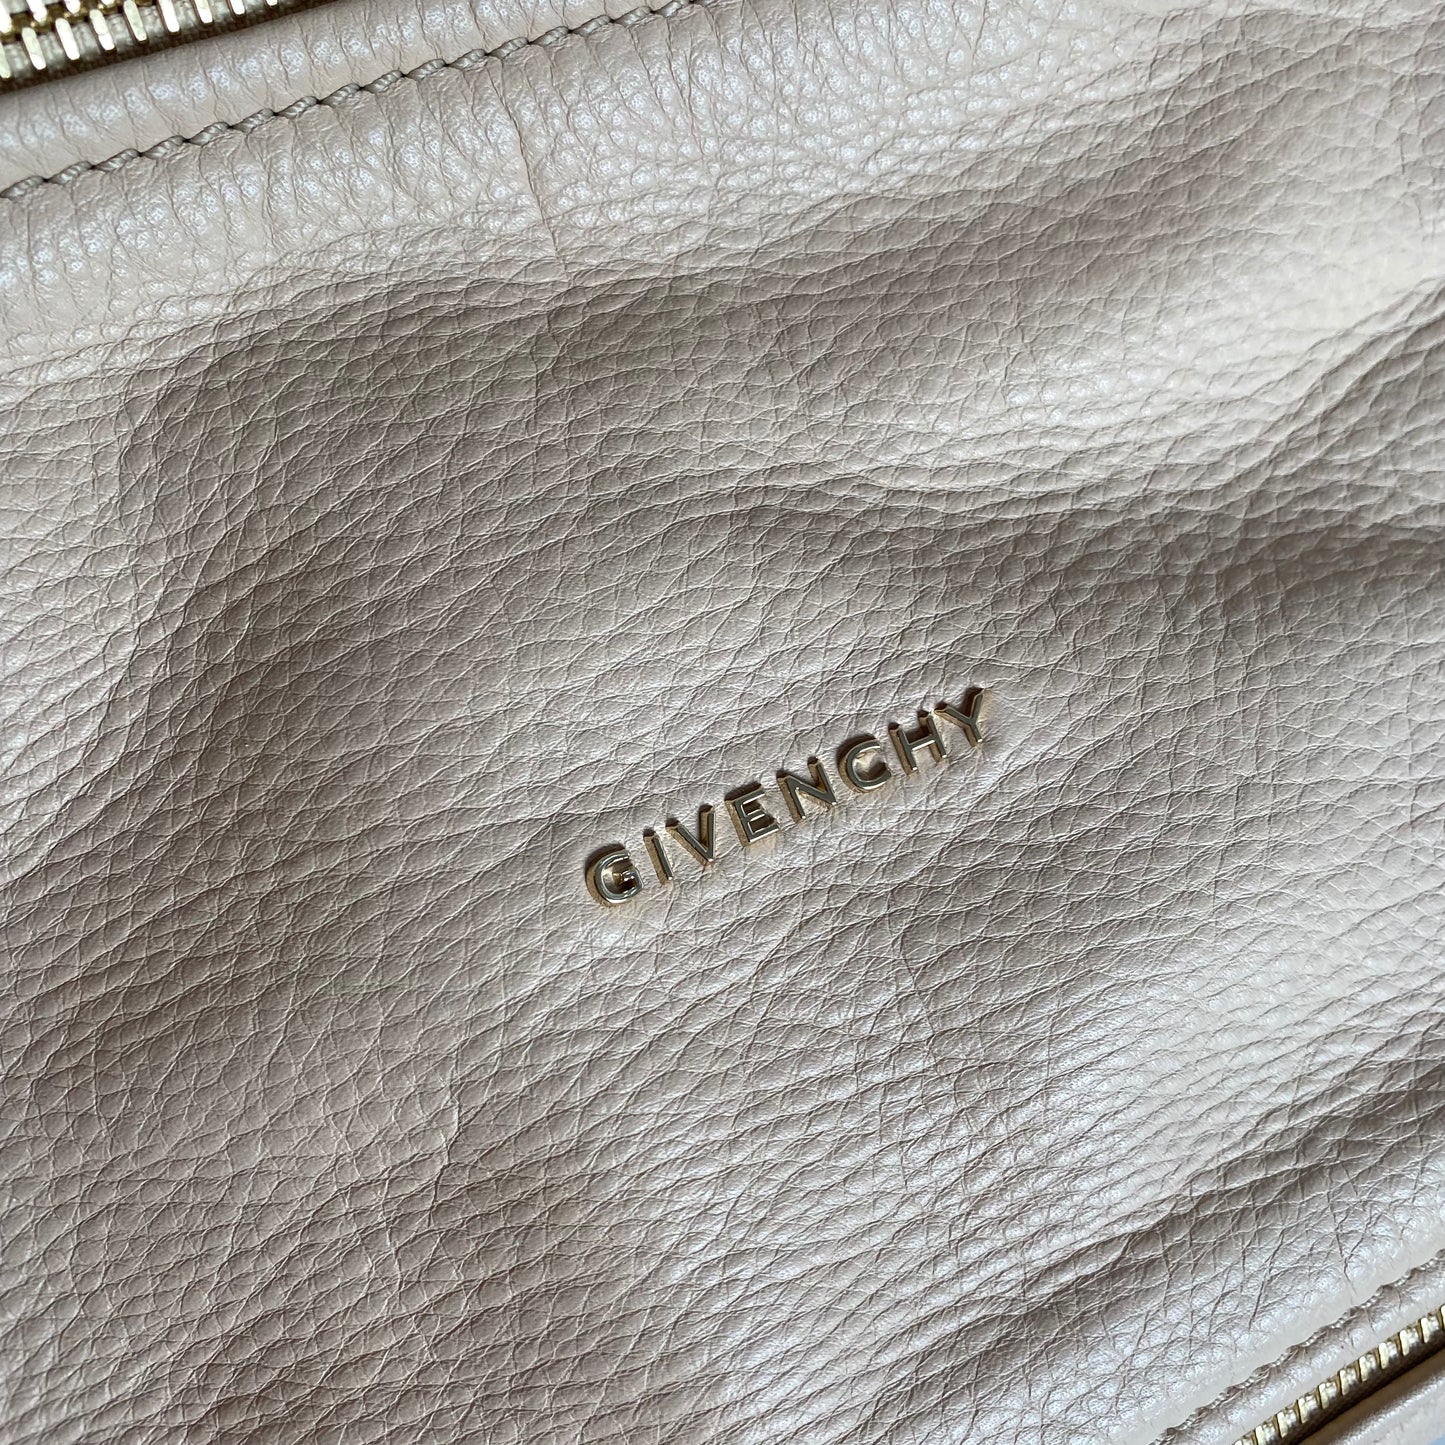 Givenchy Large Studded Pandora Leather Satchel